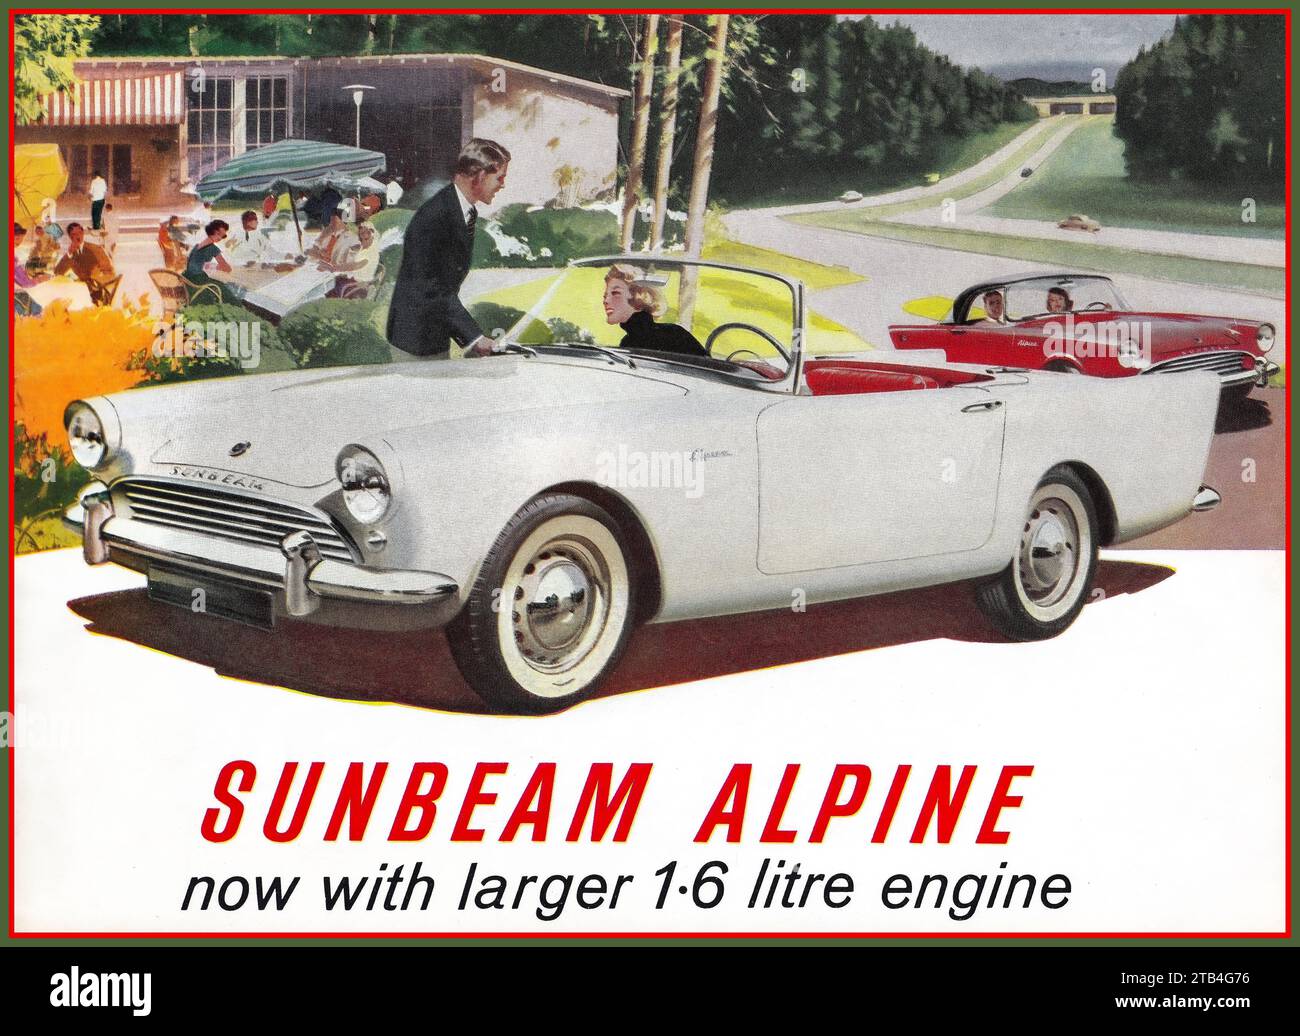 Sunbeam Alpine 2 portes voiture de sport coupé 1963 Vintage British Made fabriqué voiture publicitaire Royaume-Uni 'SUNBEAM ALPINE maintenant avec un plus grand moteur de 1,6 litres.' Banque D'Images